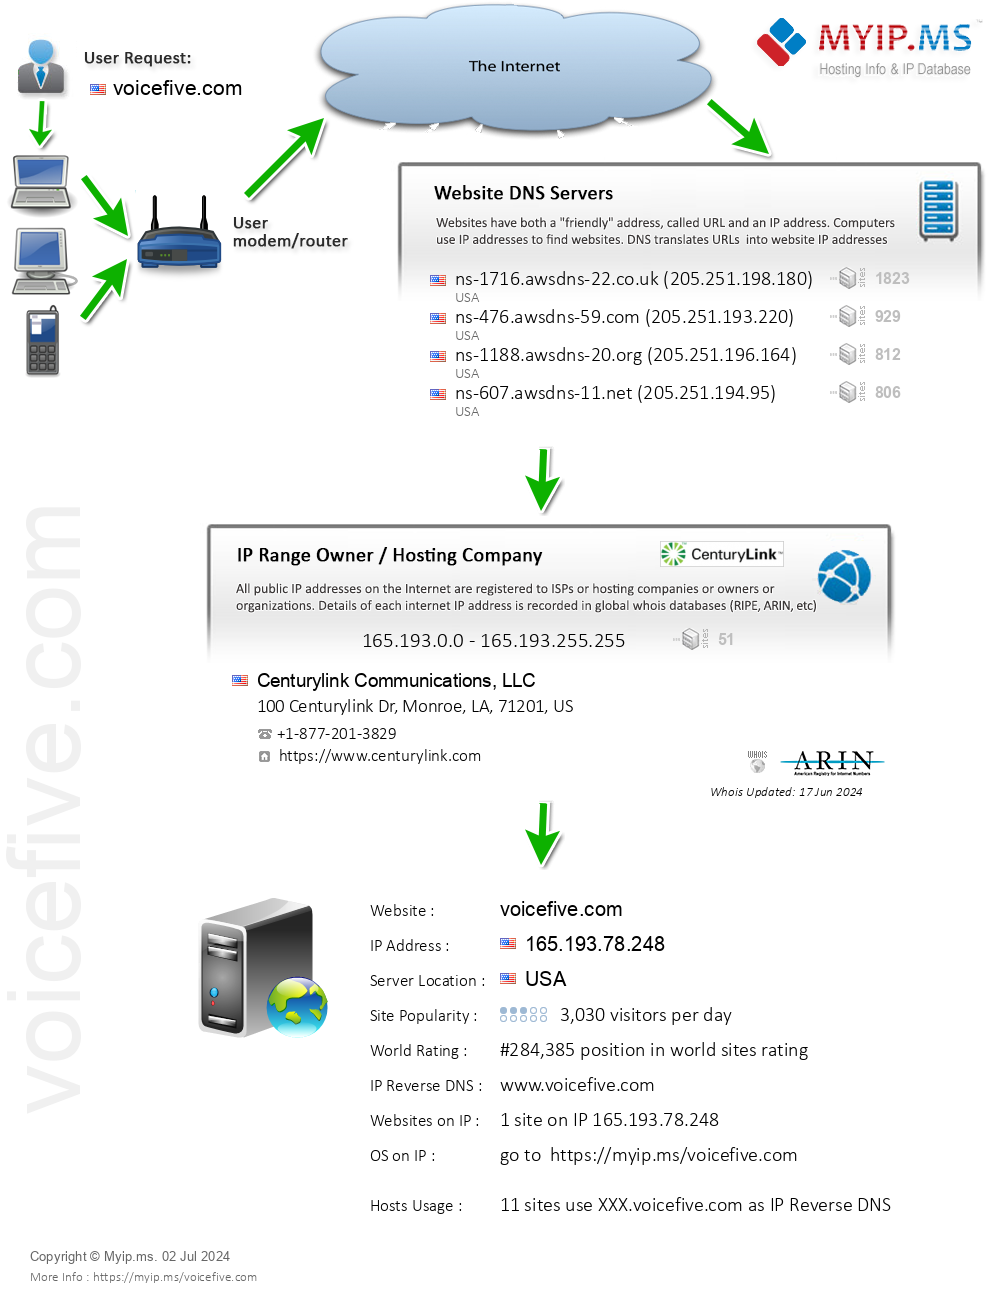 Voicefive.com - Website Hosting Visual IP Diagram